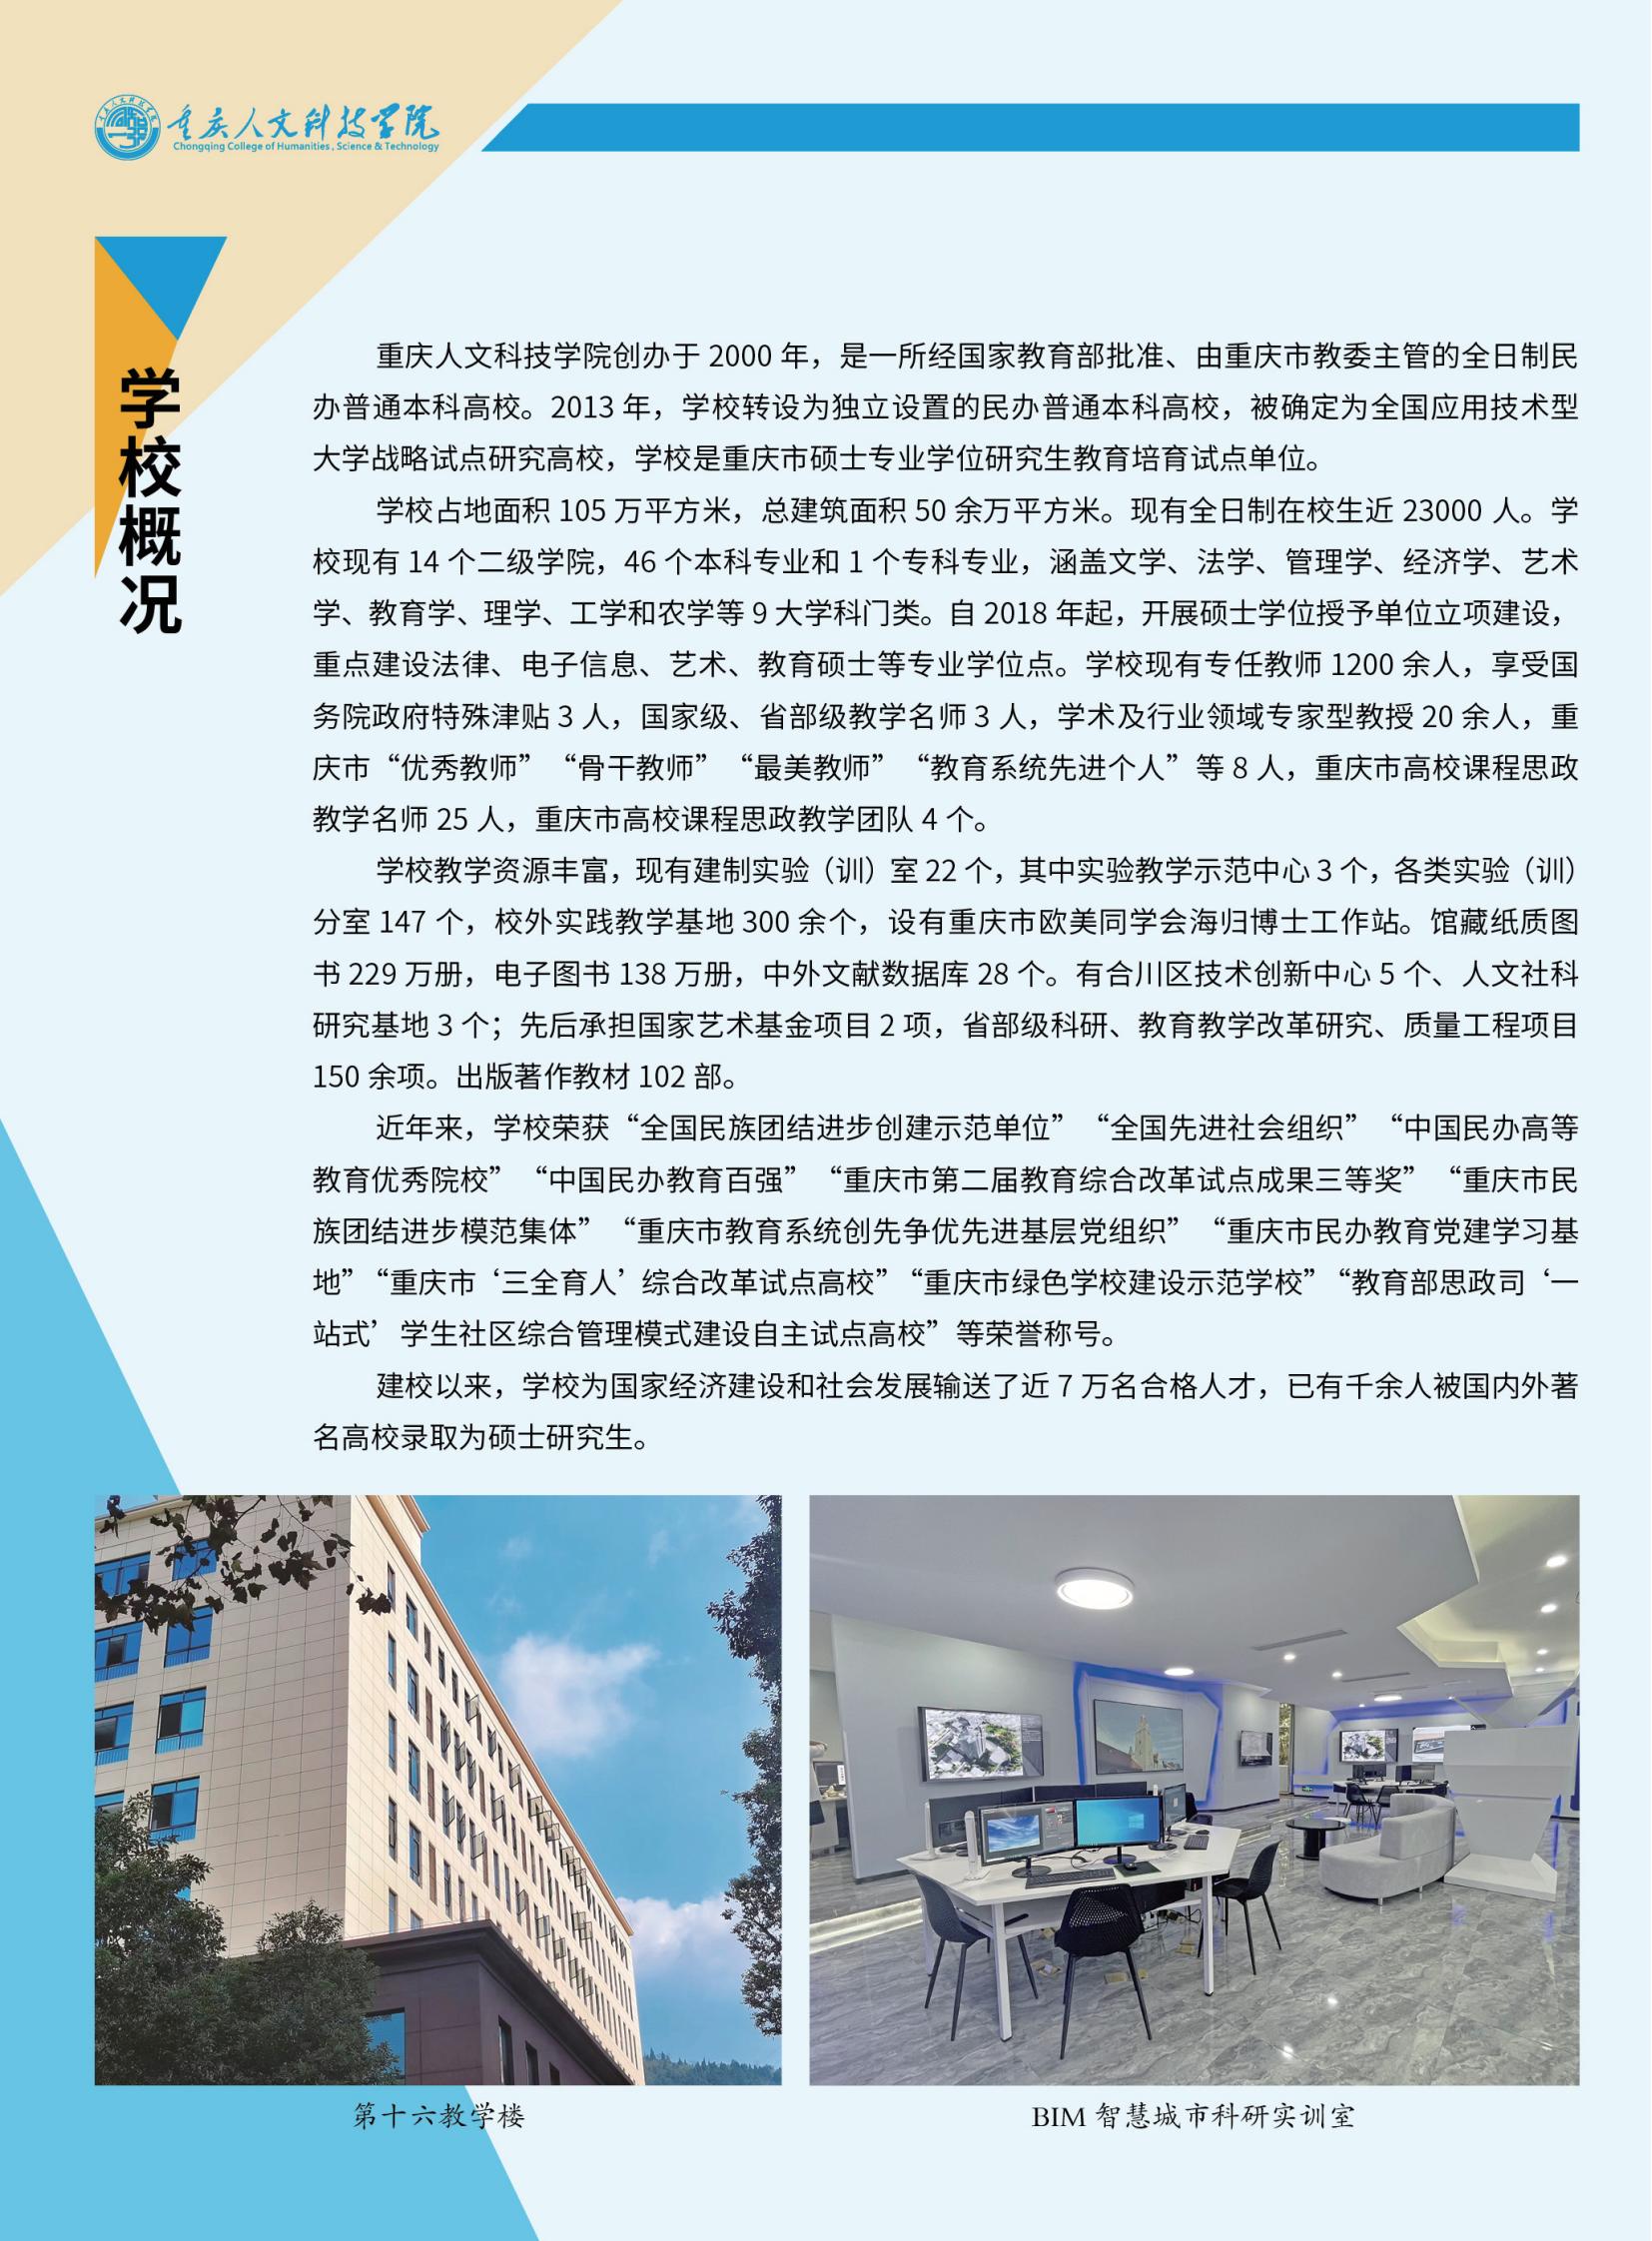 重庆人文科技学院封校图片